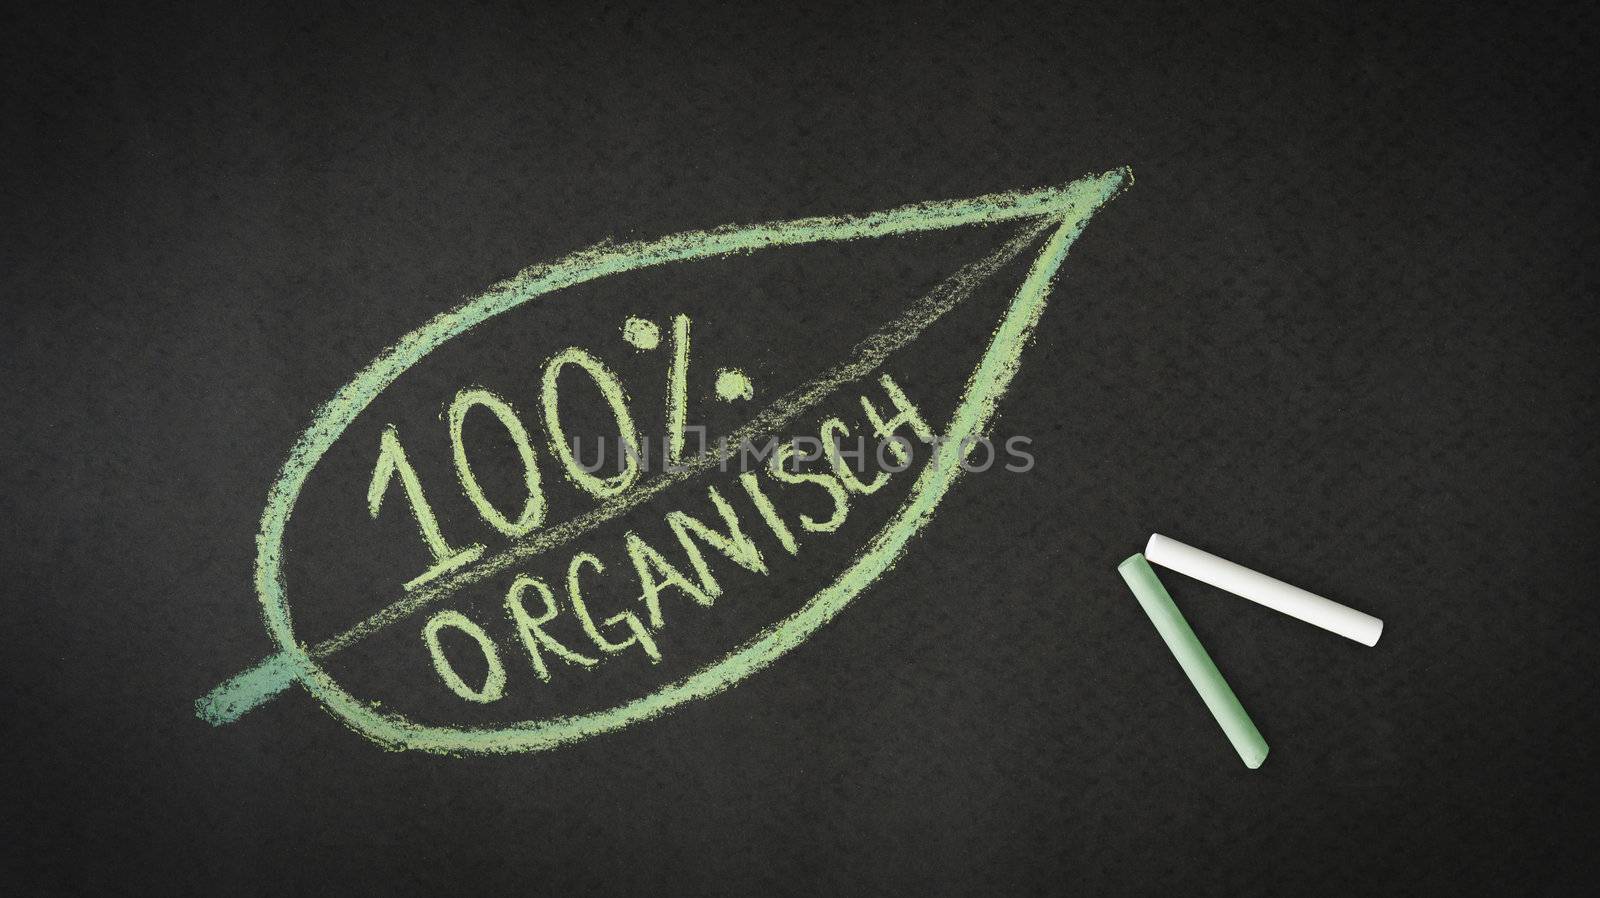 100 percent Organic by kbuntu